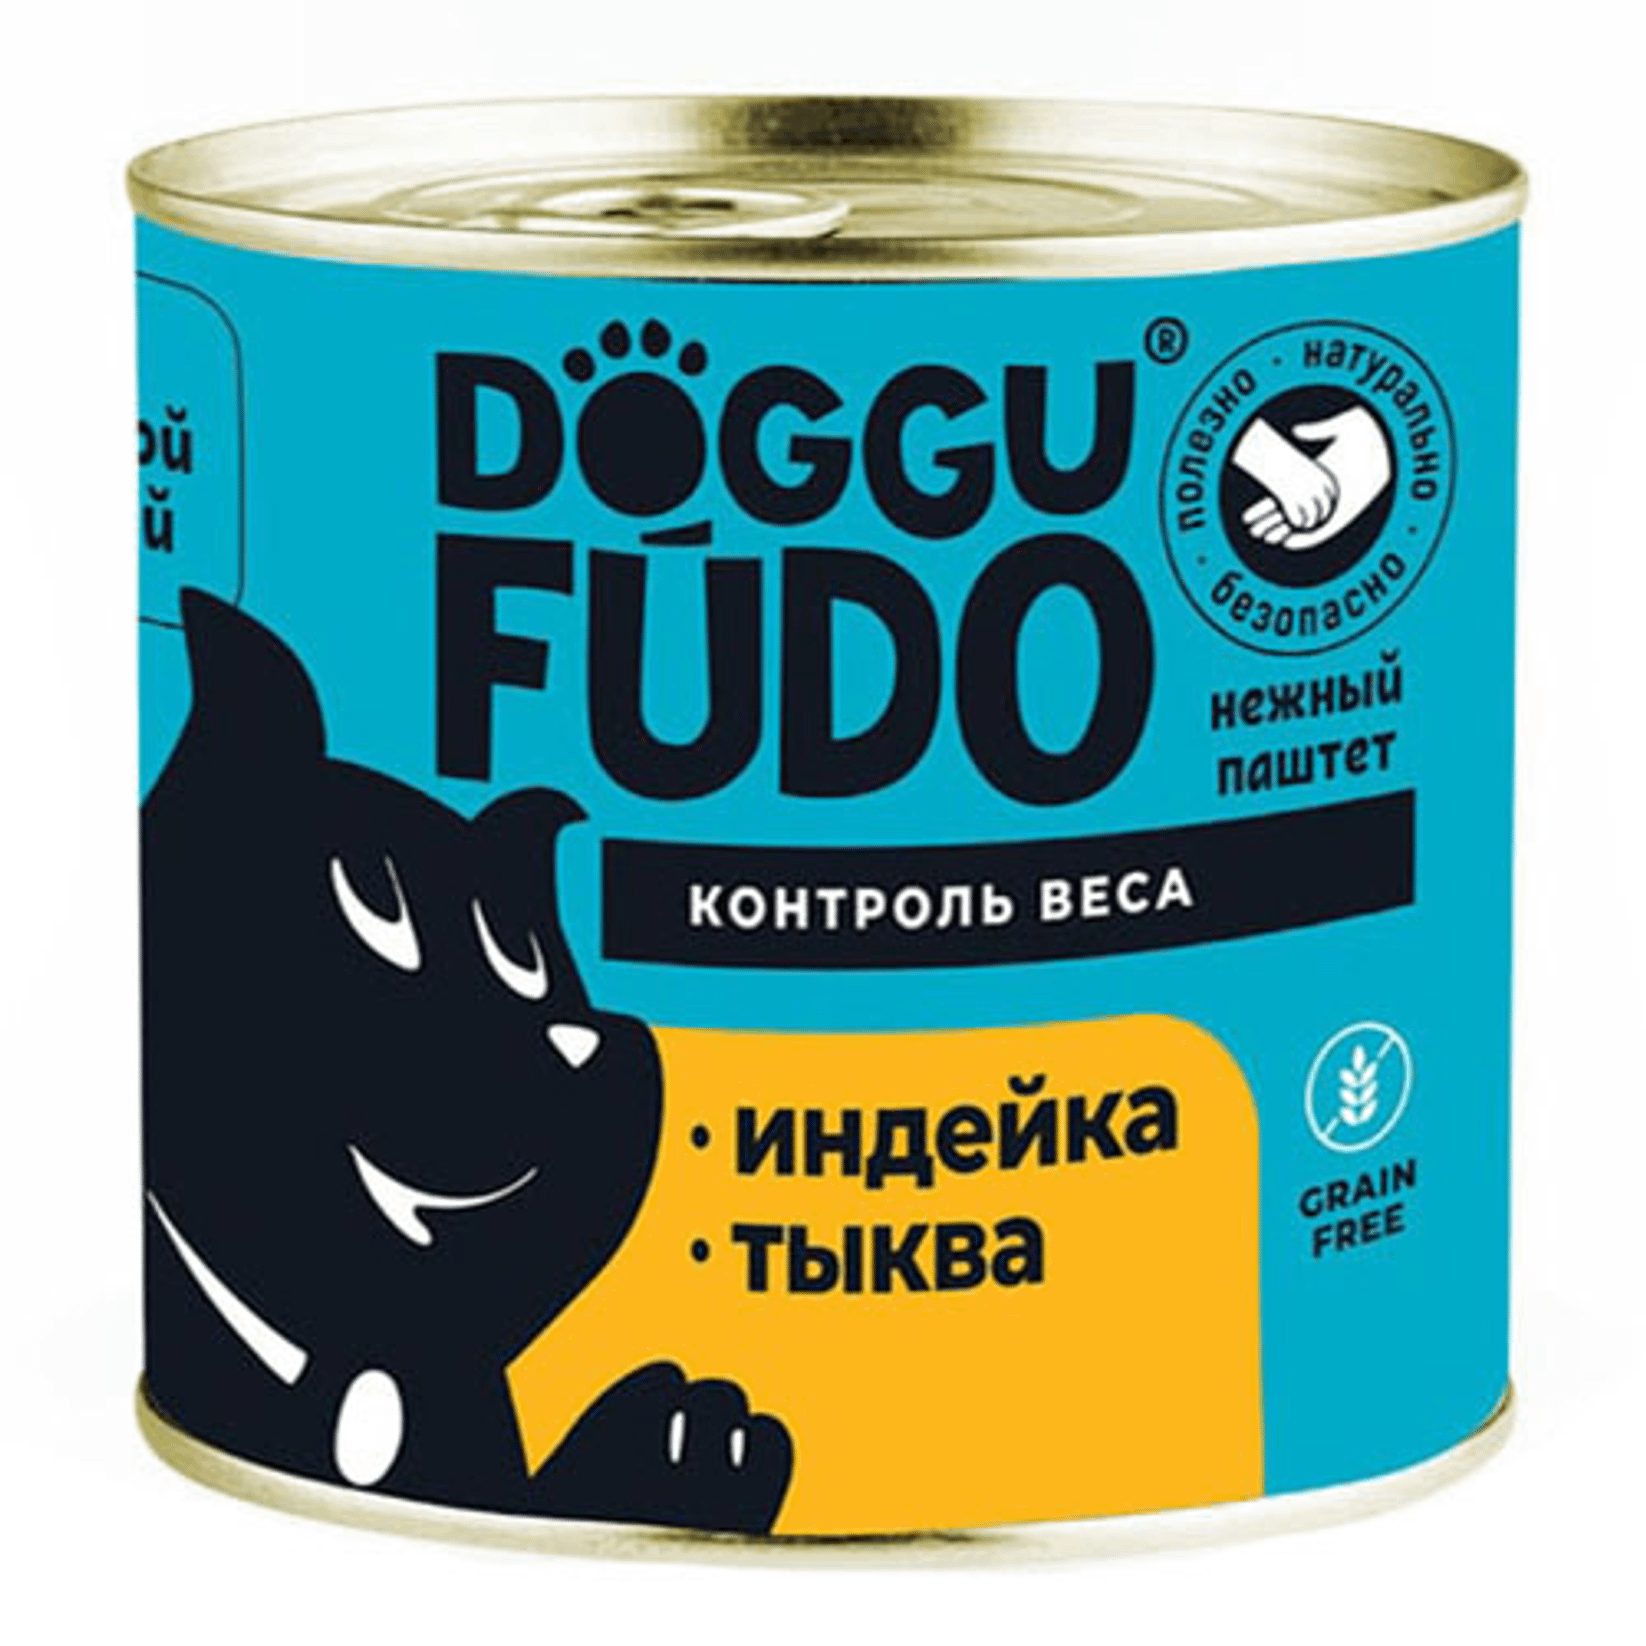 Влажный корм для собак Doggufudo, индейка с тыквой, 6 шт по 240 г